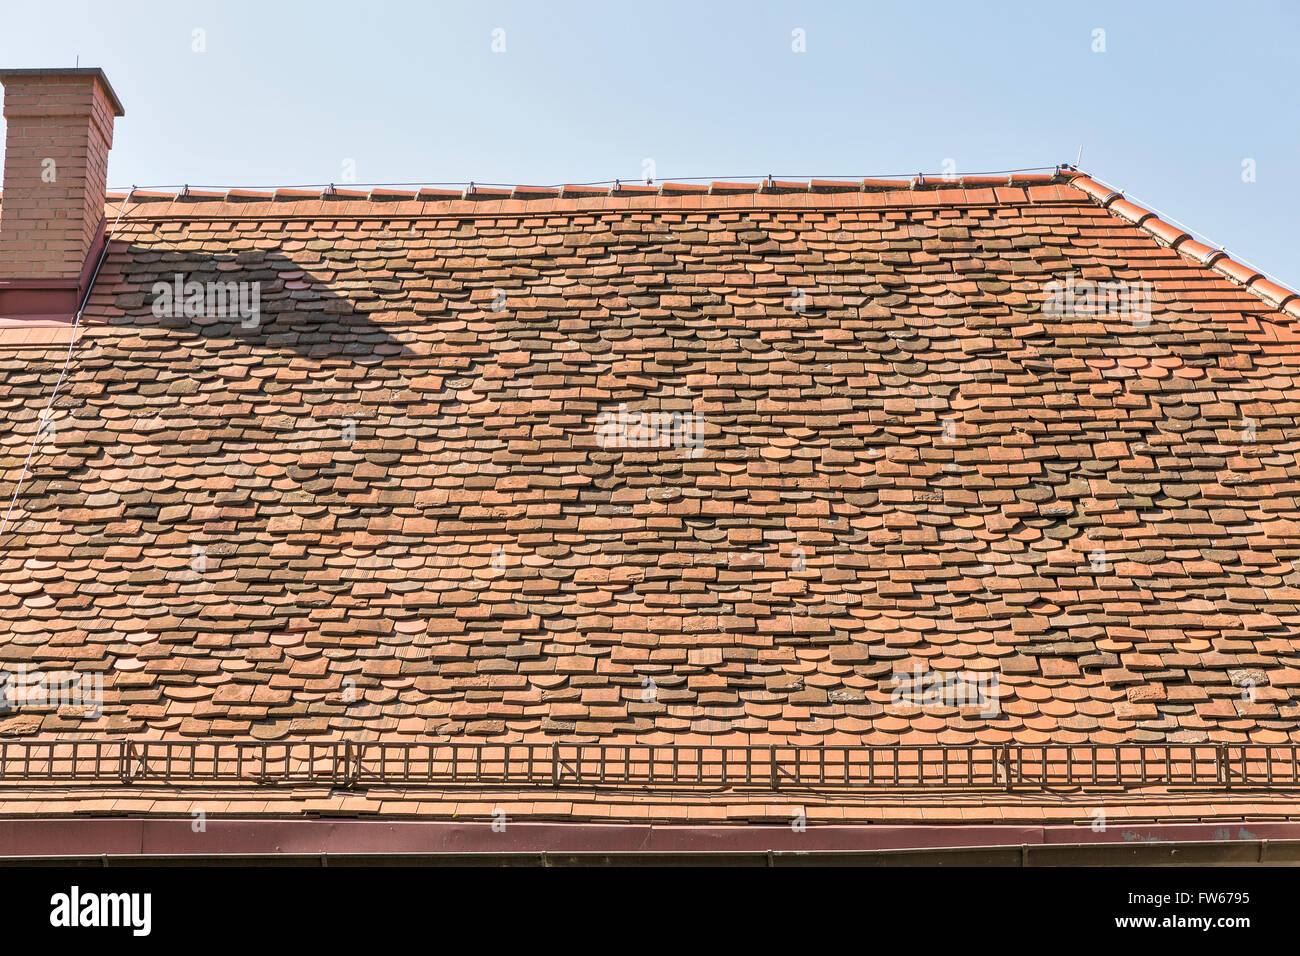 Voir de vieux toits de tuiles rouge chambre avec cheminée Banque D'Images